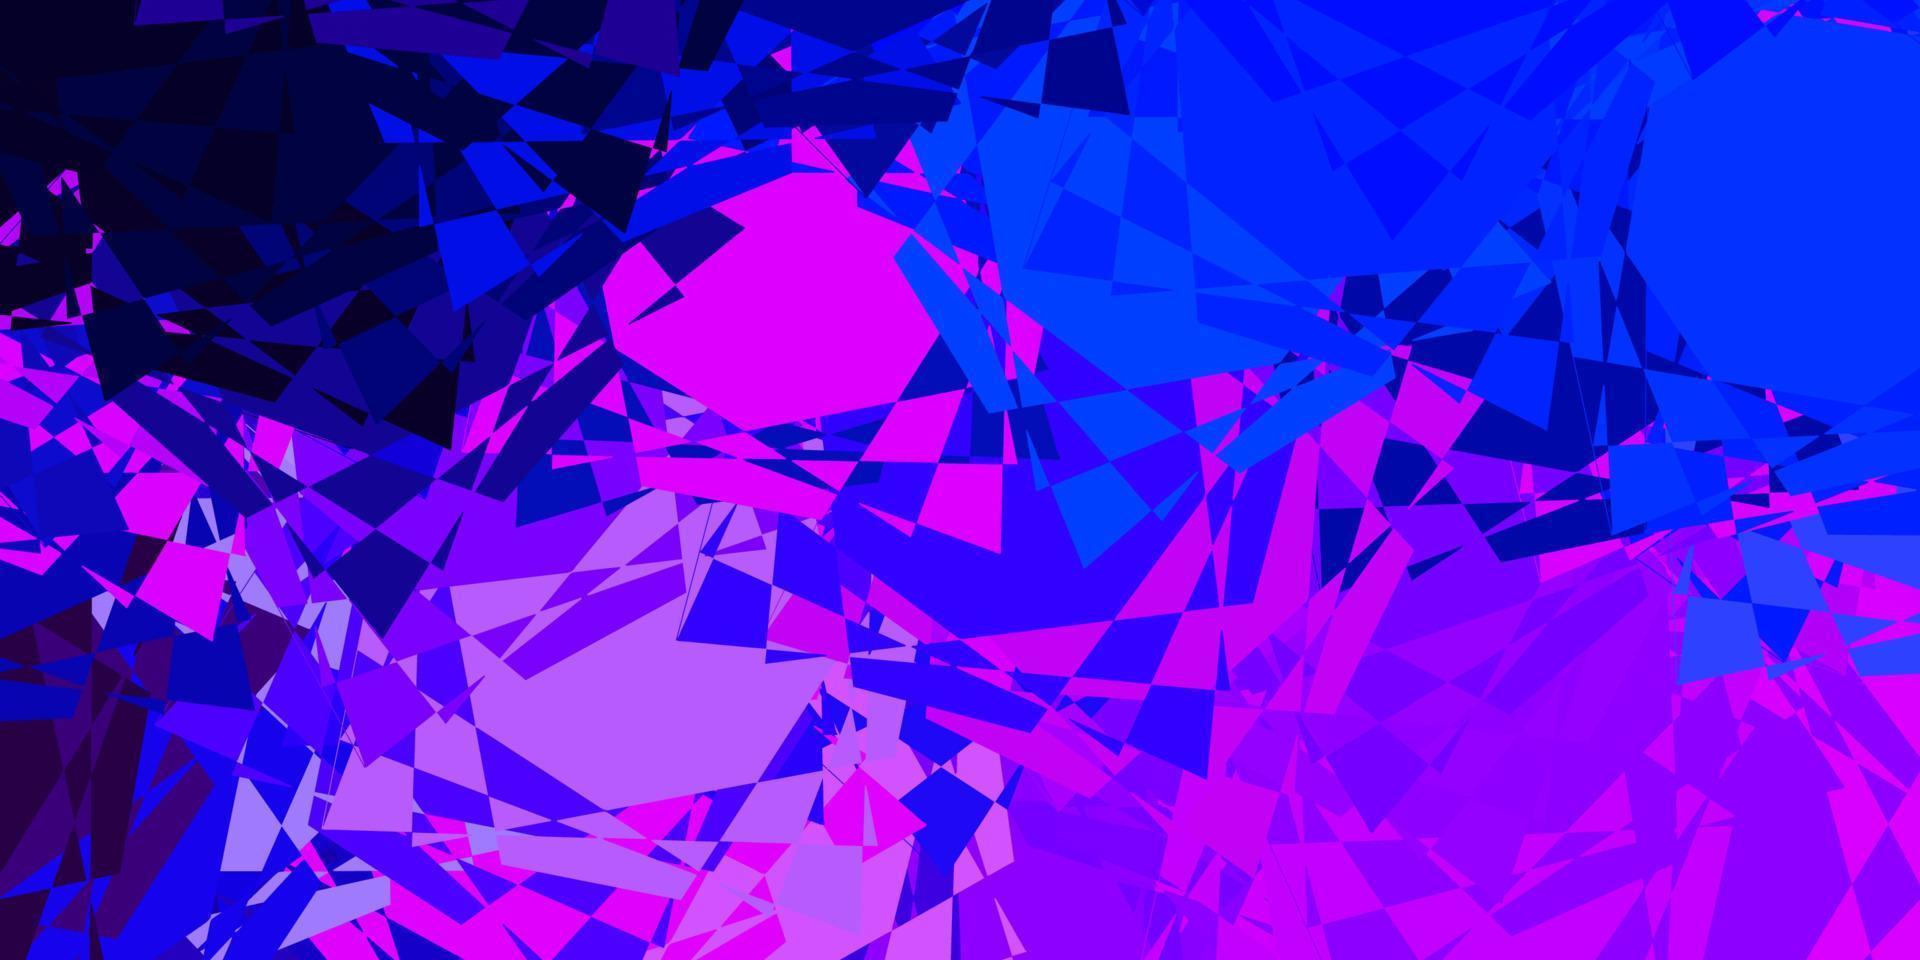 lichtroze, blauw vectorpatroon met veelhoekige vormen. vector